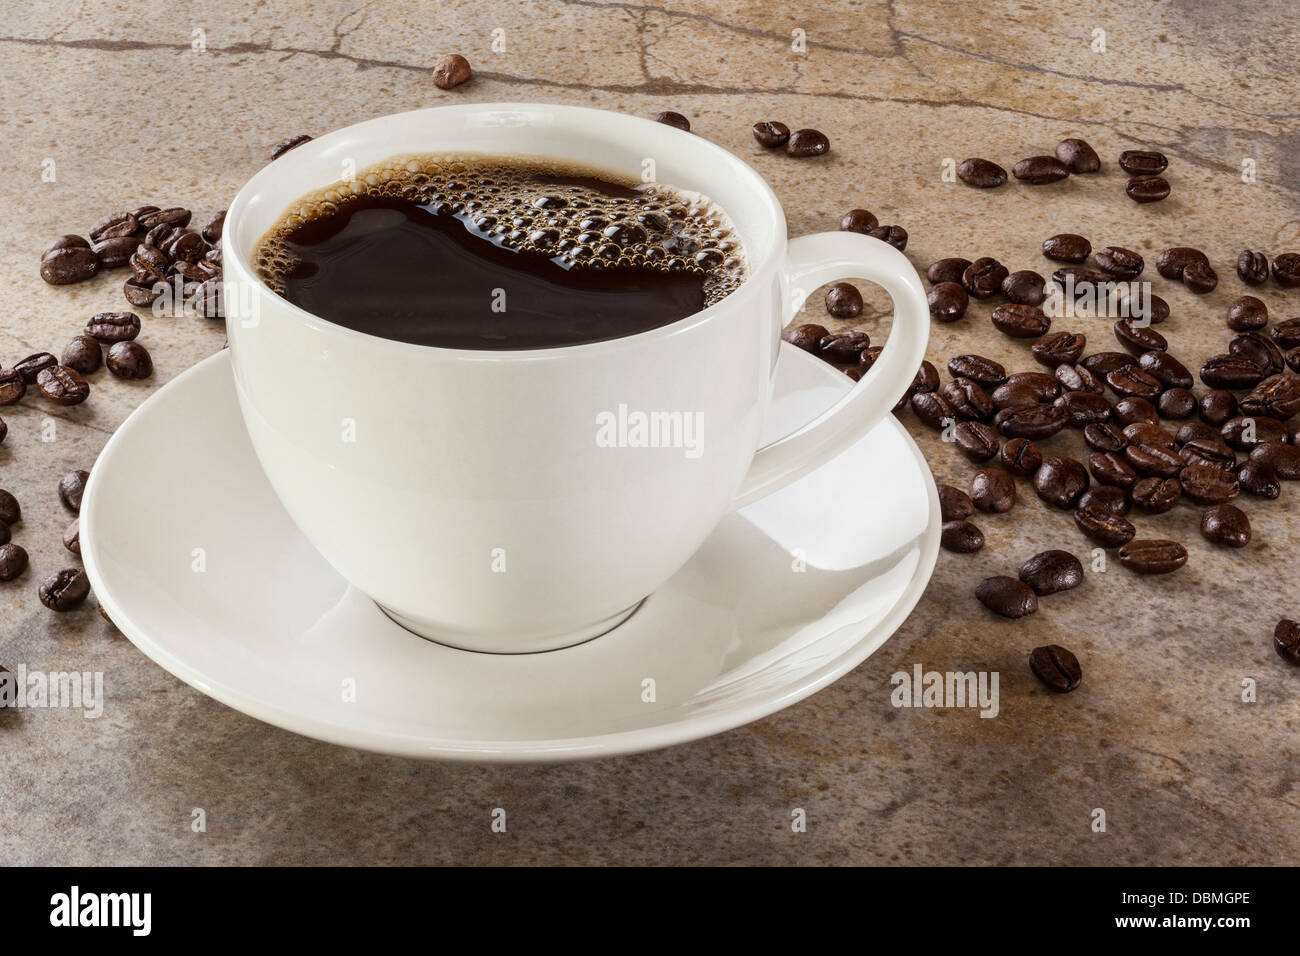 Tazza di caffè su un piano di marmo la tabella con i chicchi di caffè sparsi intorno. Anteriore per la regolazione del back focus. Foto Stock